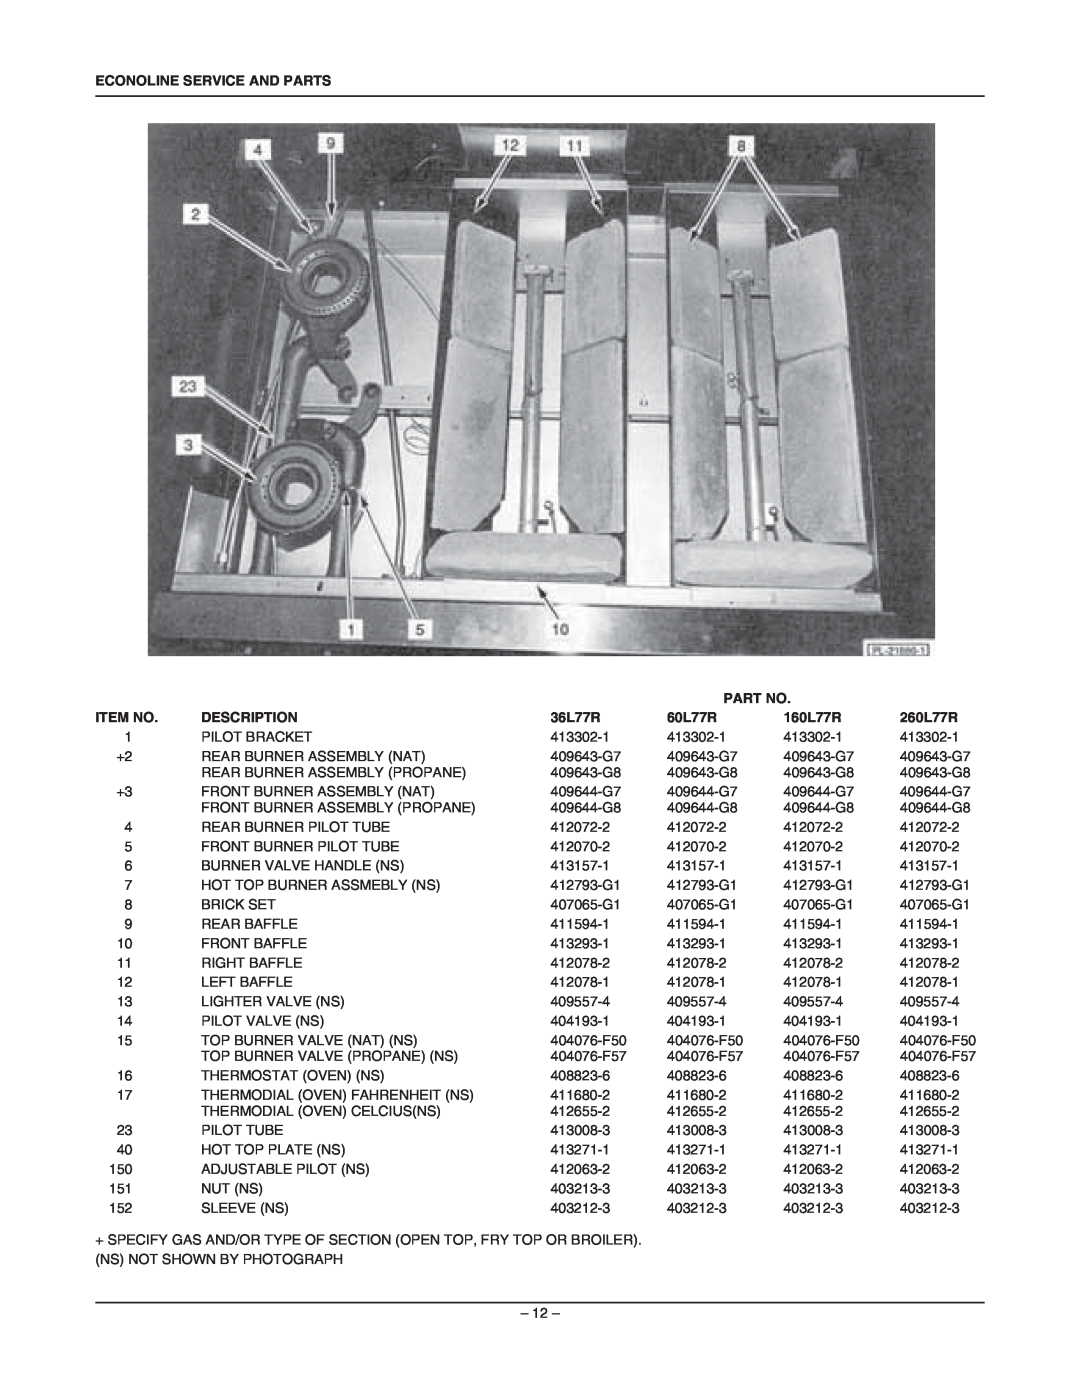 Vulcan-Hart 36FL77R manual Econoline Service And Parts, Item No, Description, 36L77R, 160L77R, 260L77R 